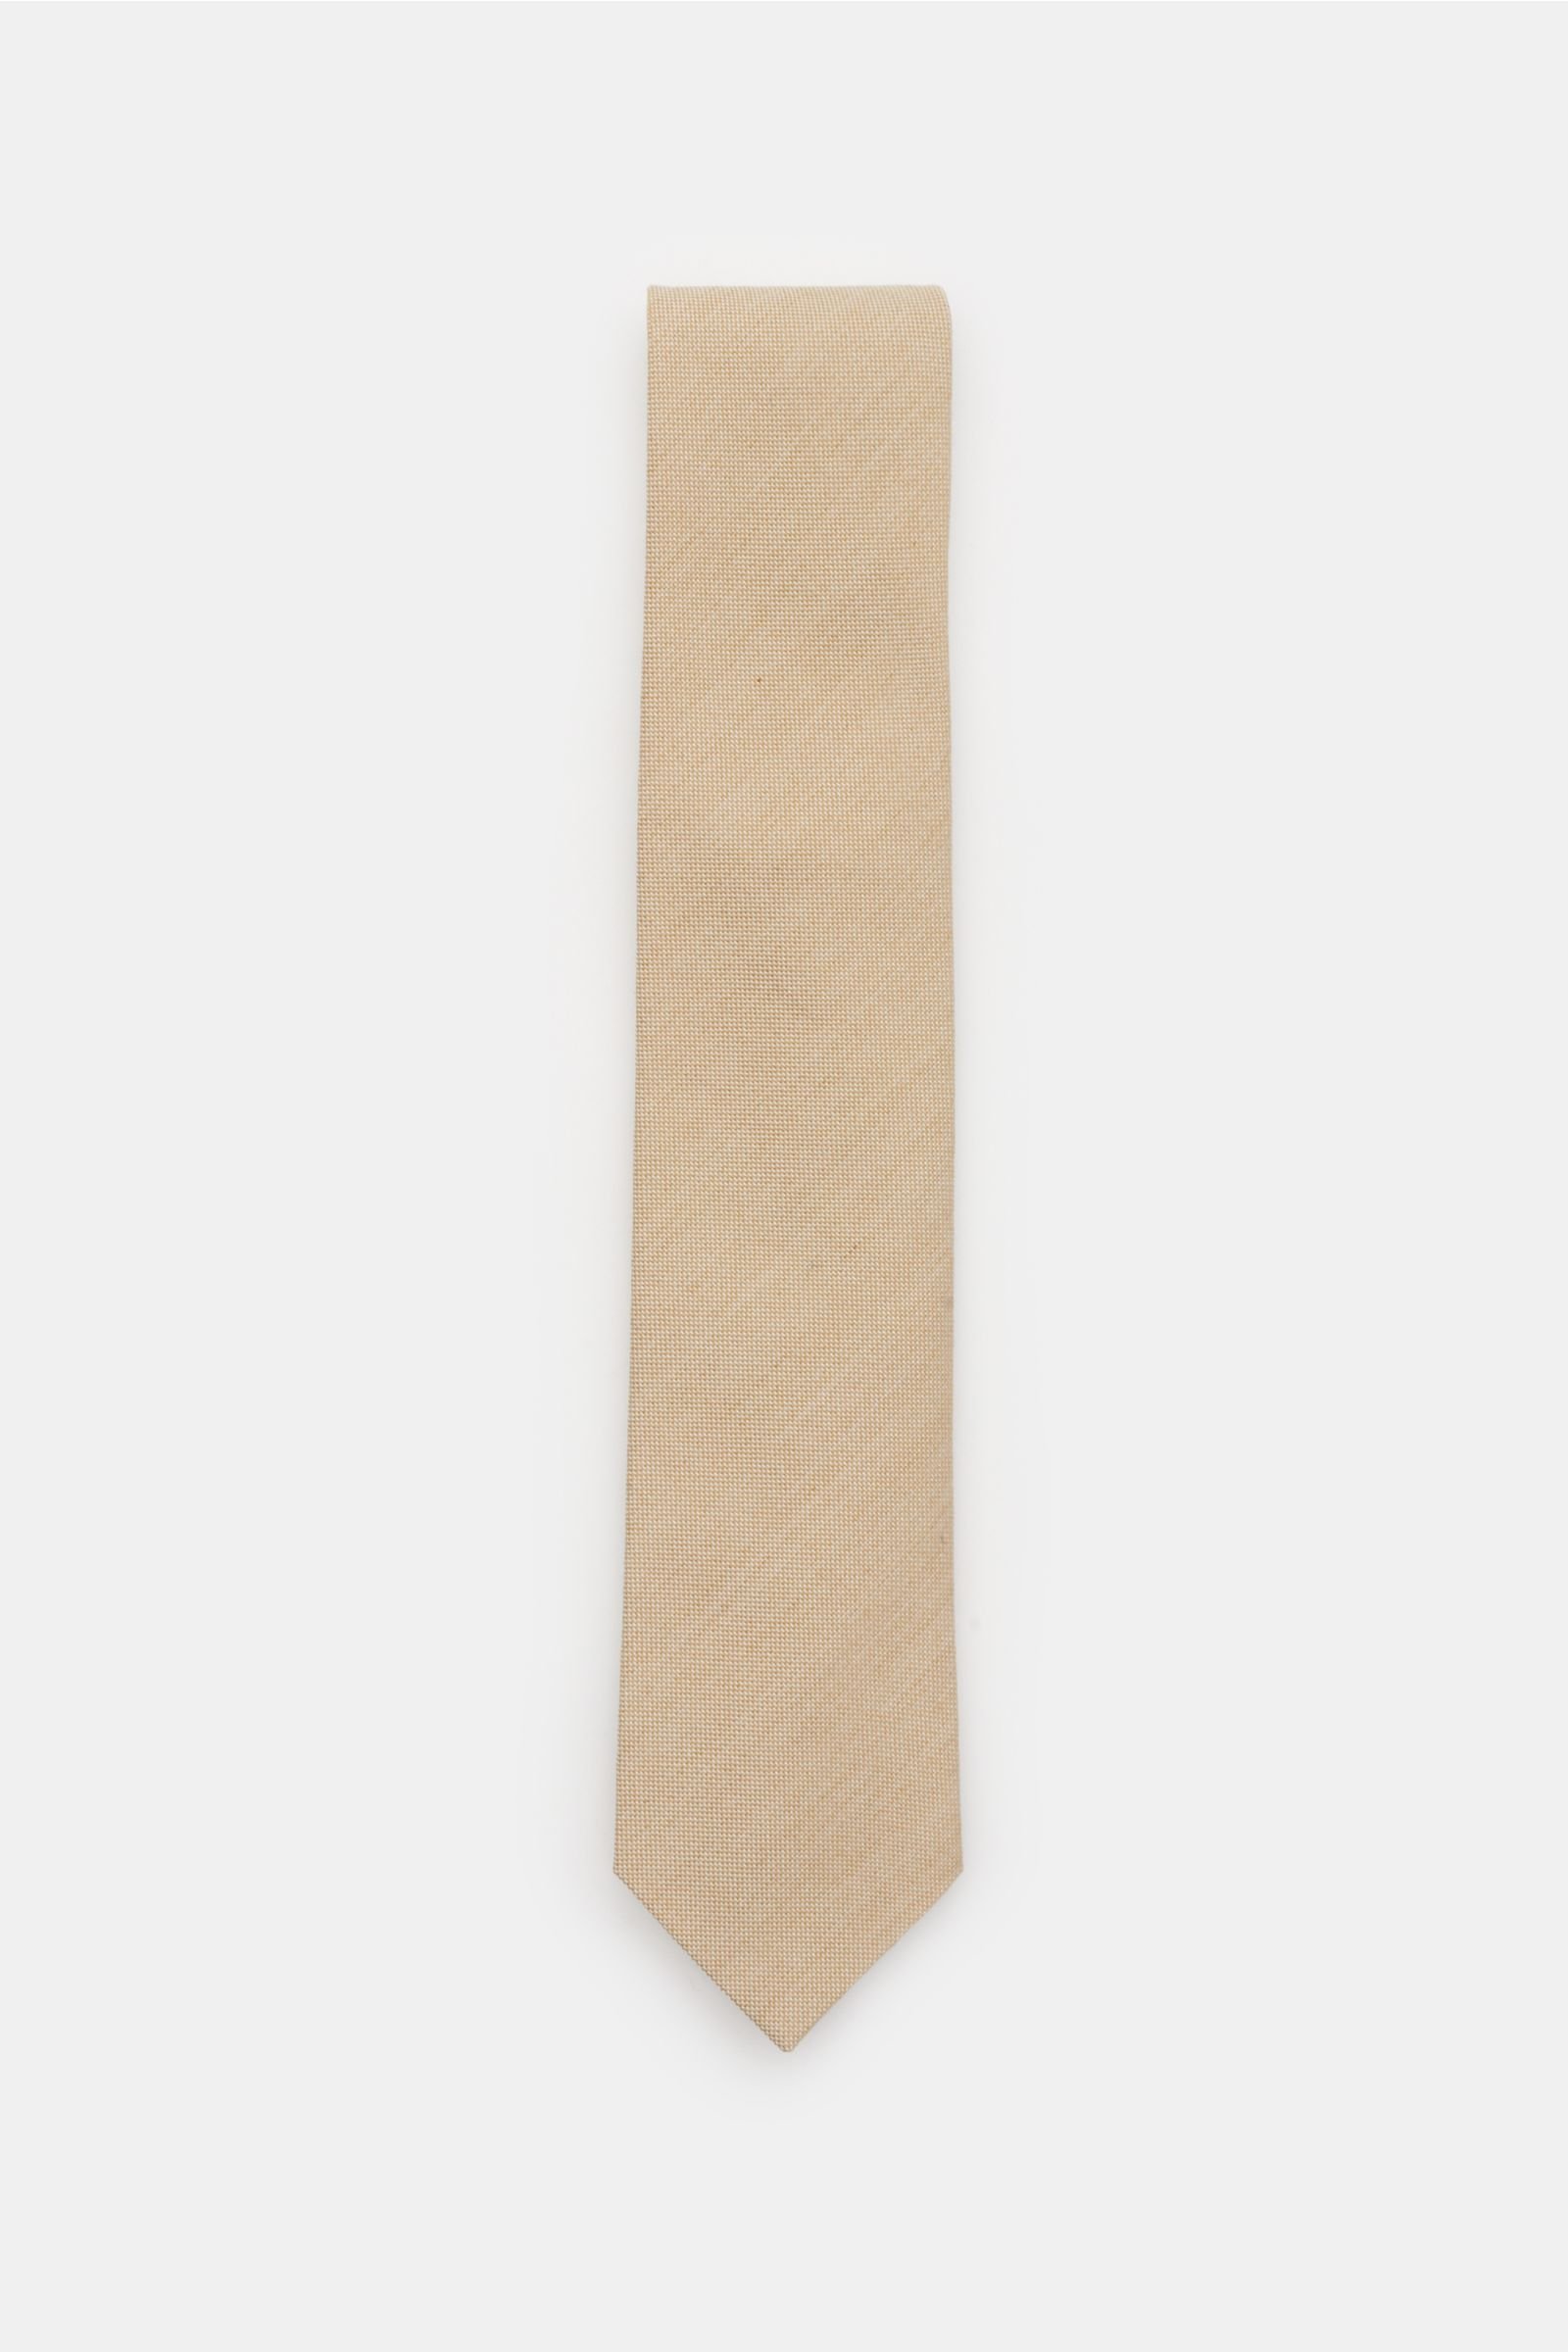 Krawatte beige